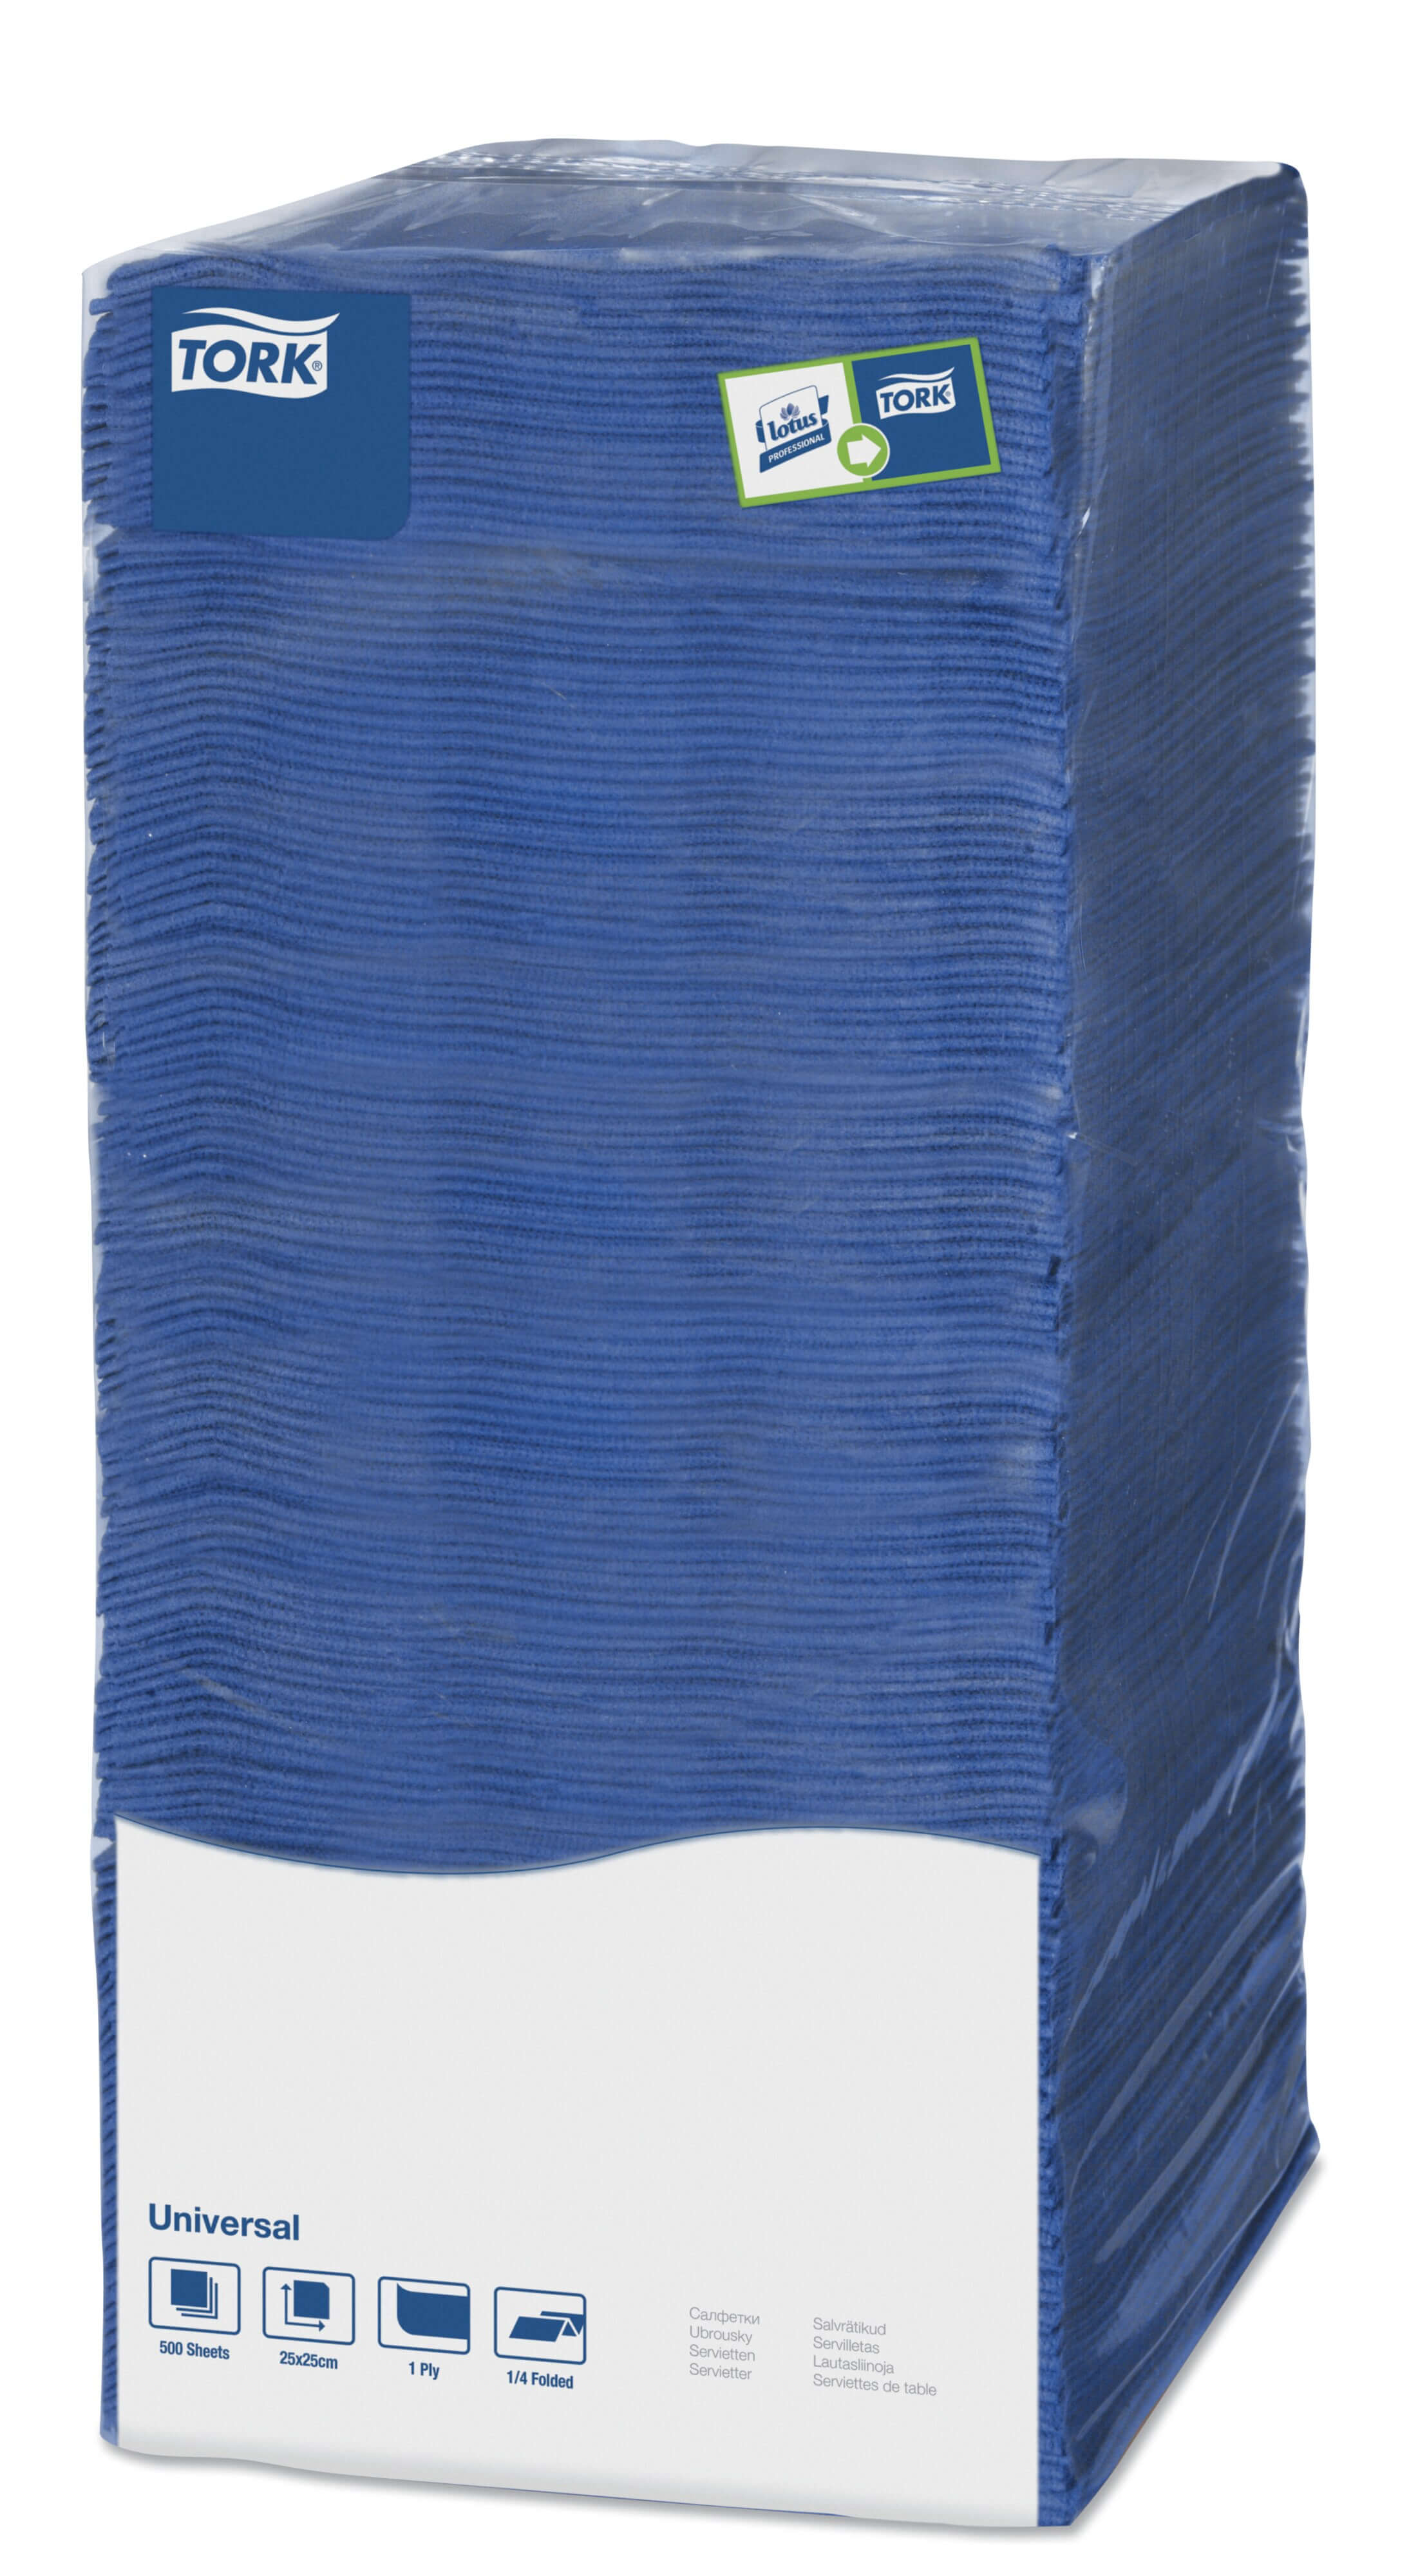 Столовые салфетки Tork Universal однослойные, 500 листов BigPack 25х25см (тёмно-синие)